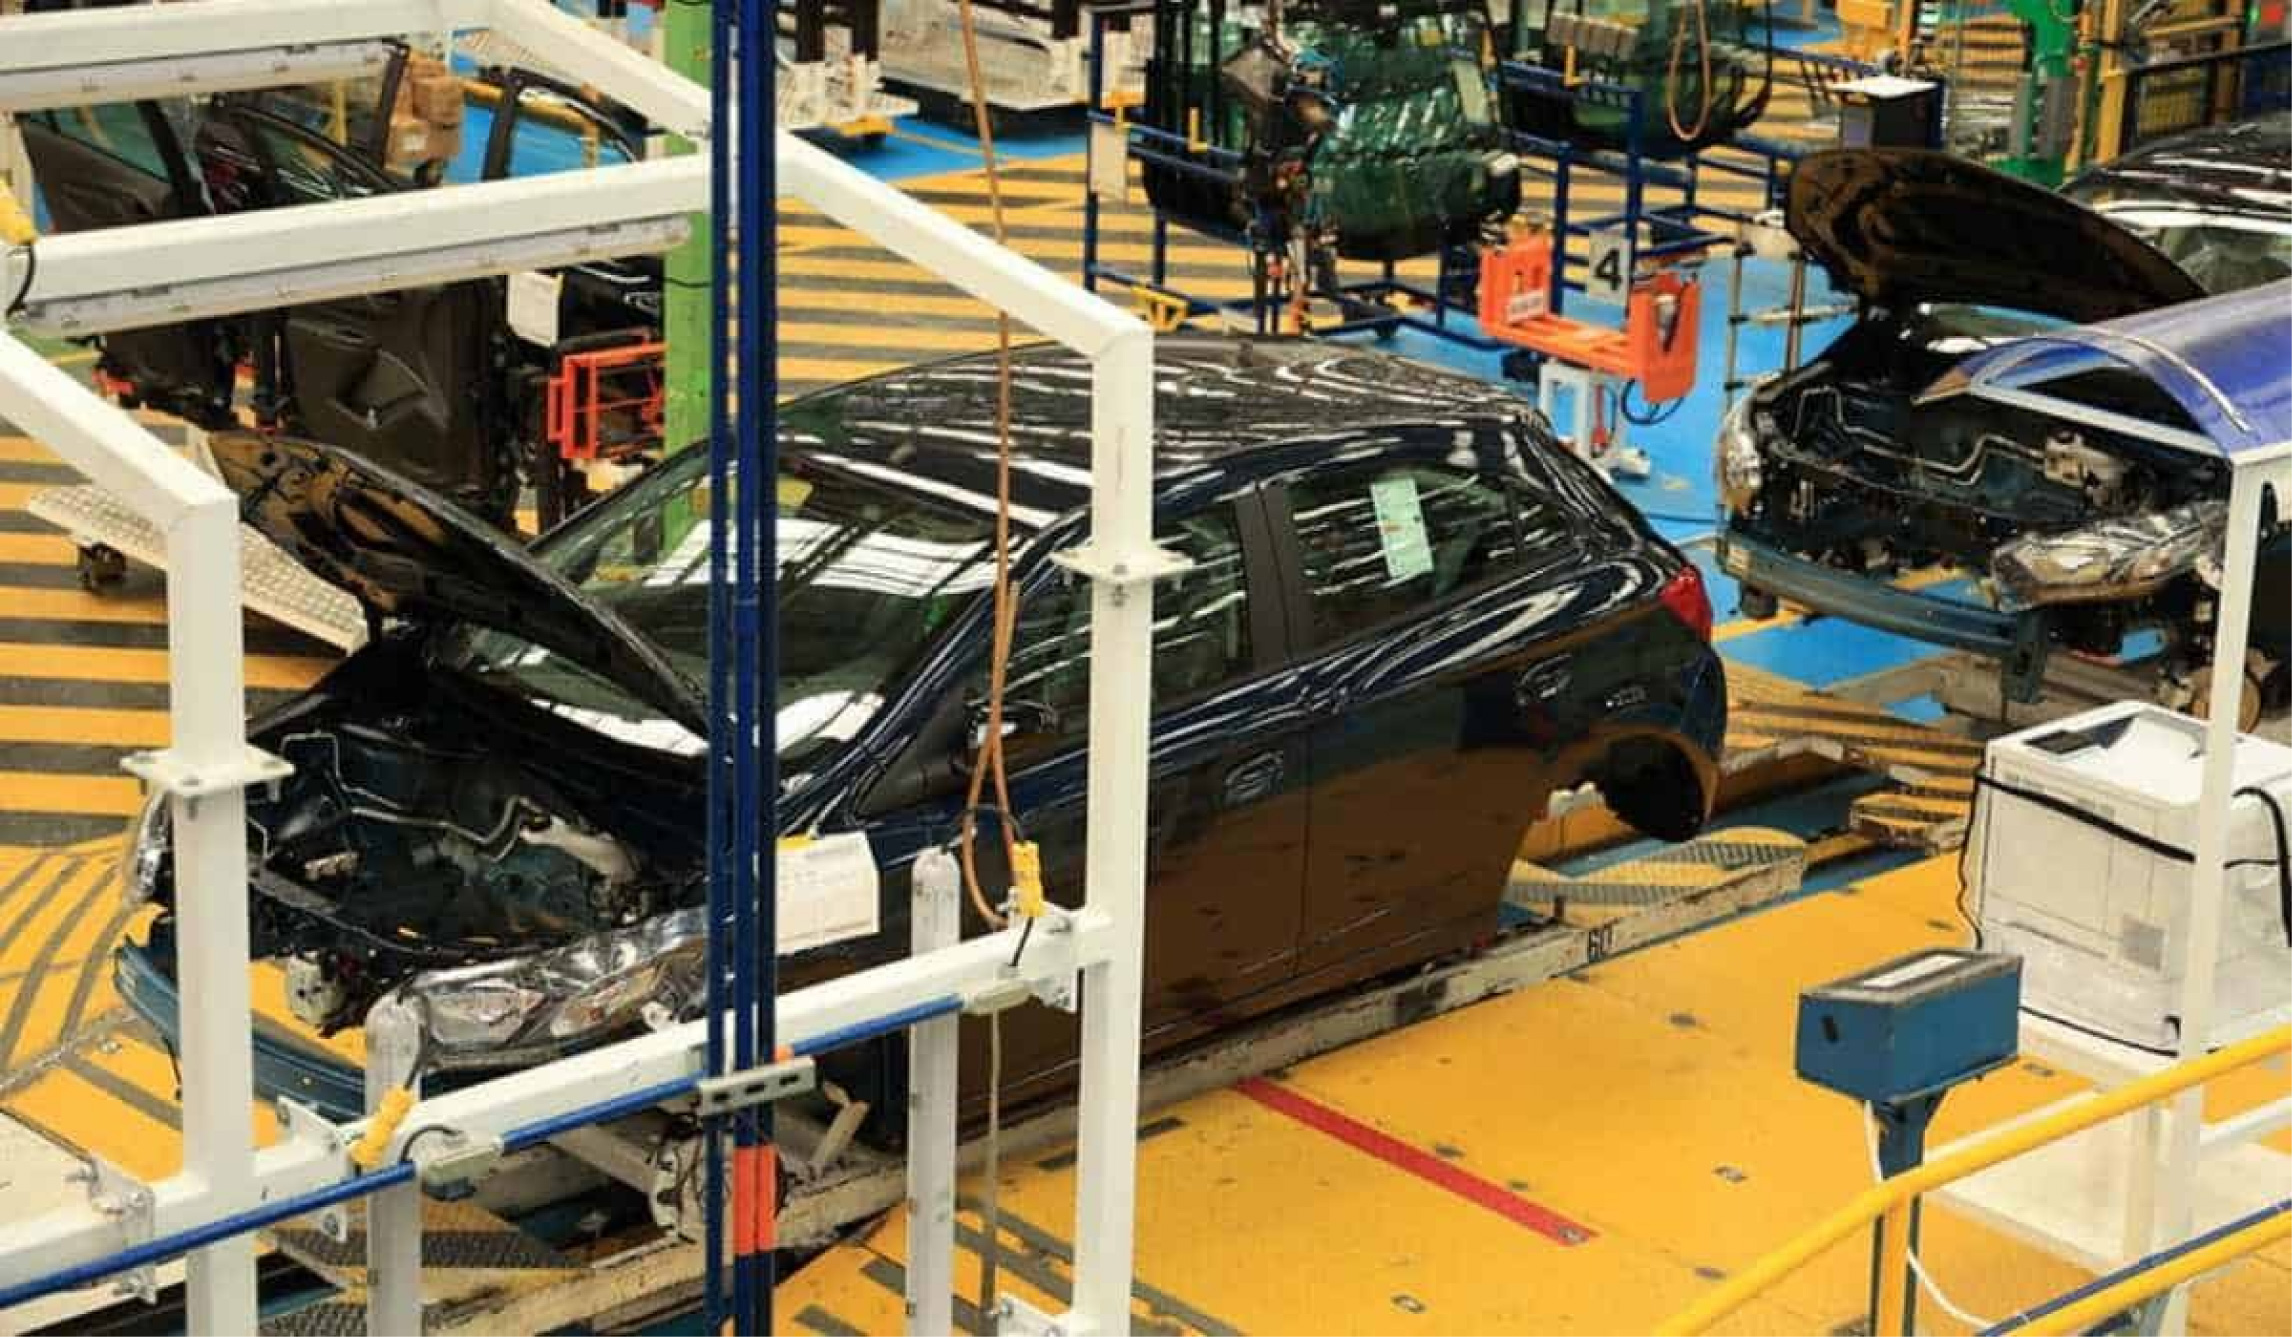 General Motors cierra sus puertas en Colombia, despedirá a 800 trabajadores: MinTrabajo interviene